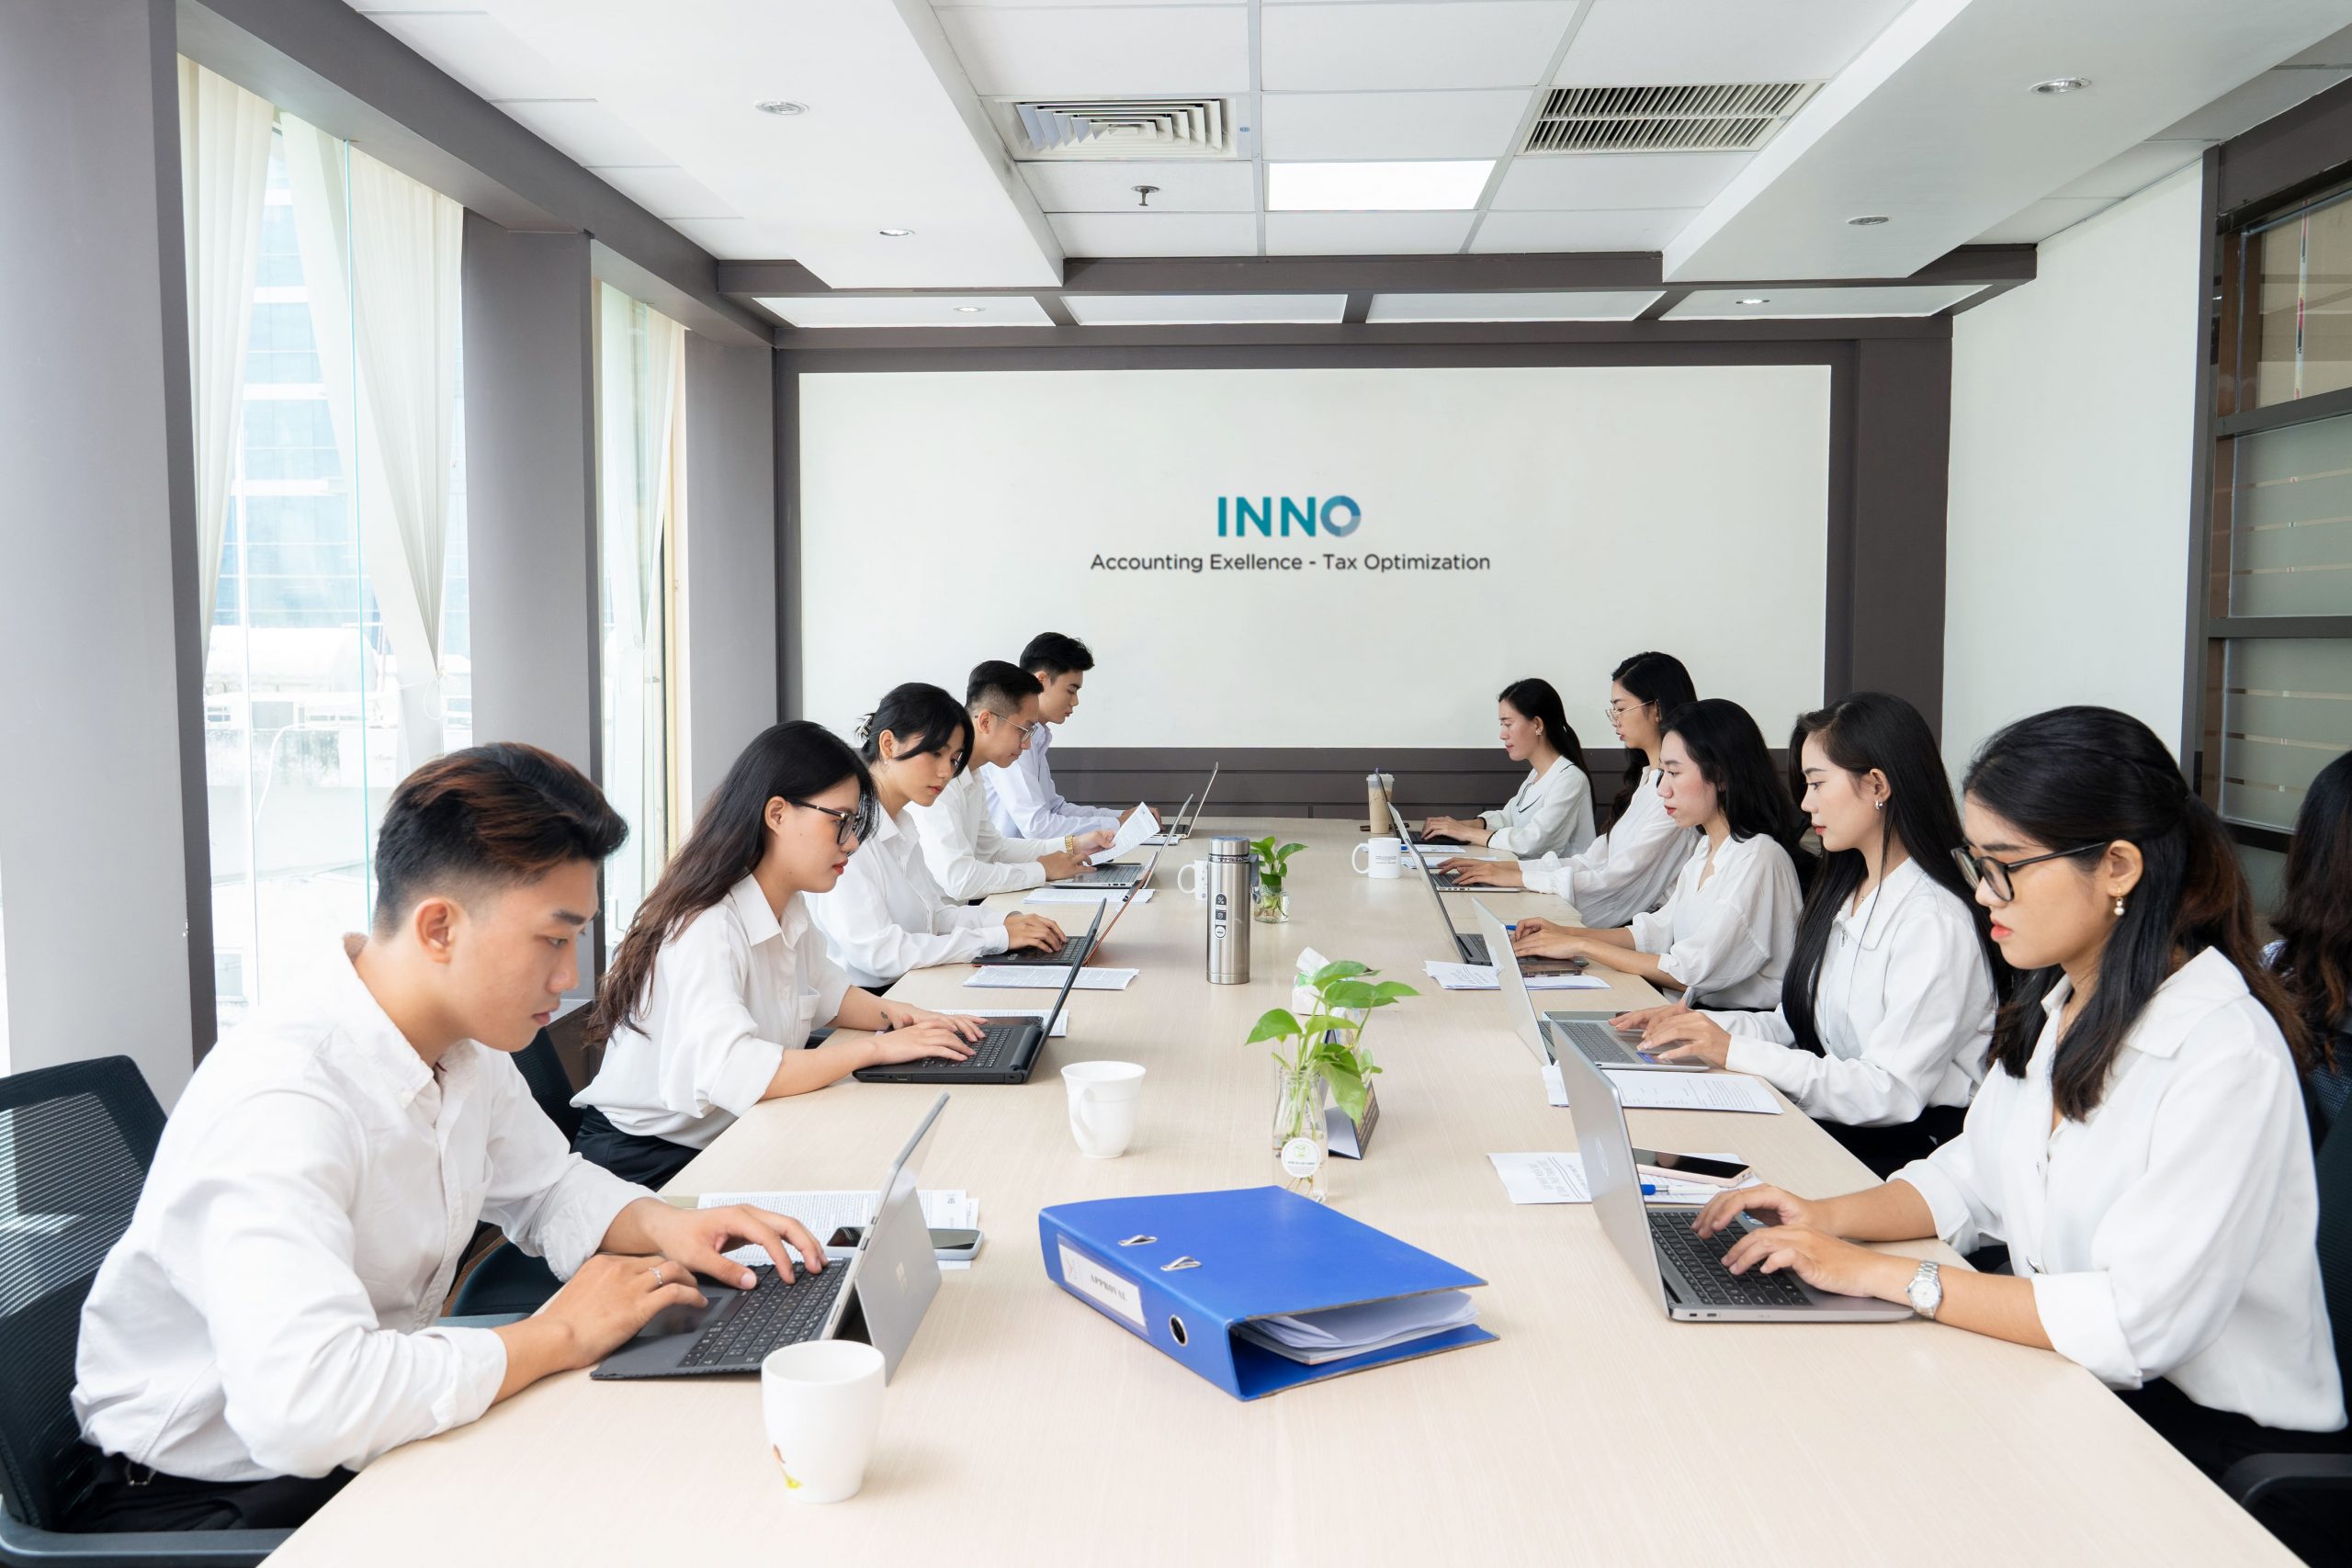 Dịch vụ nổi bật tại Kế toán INNO